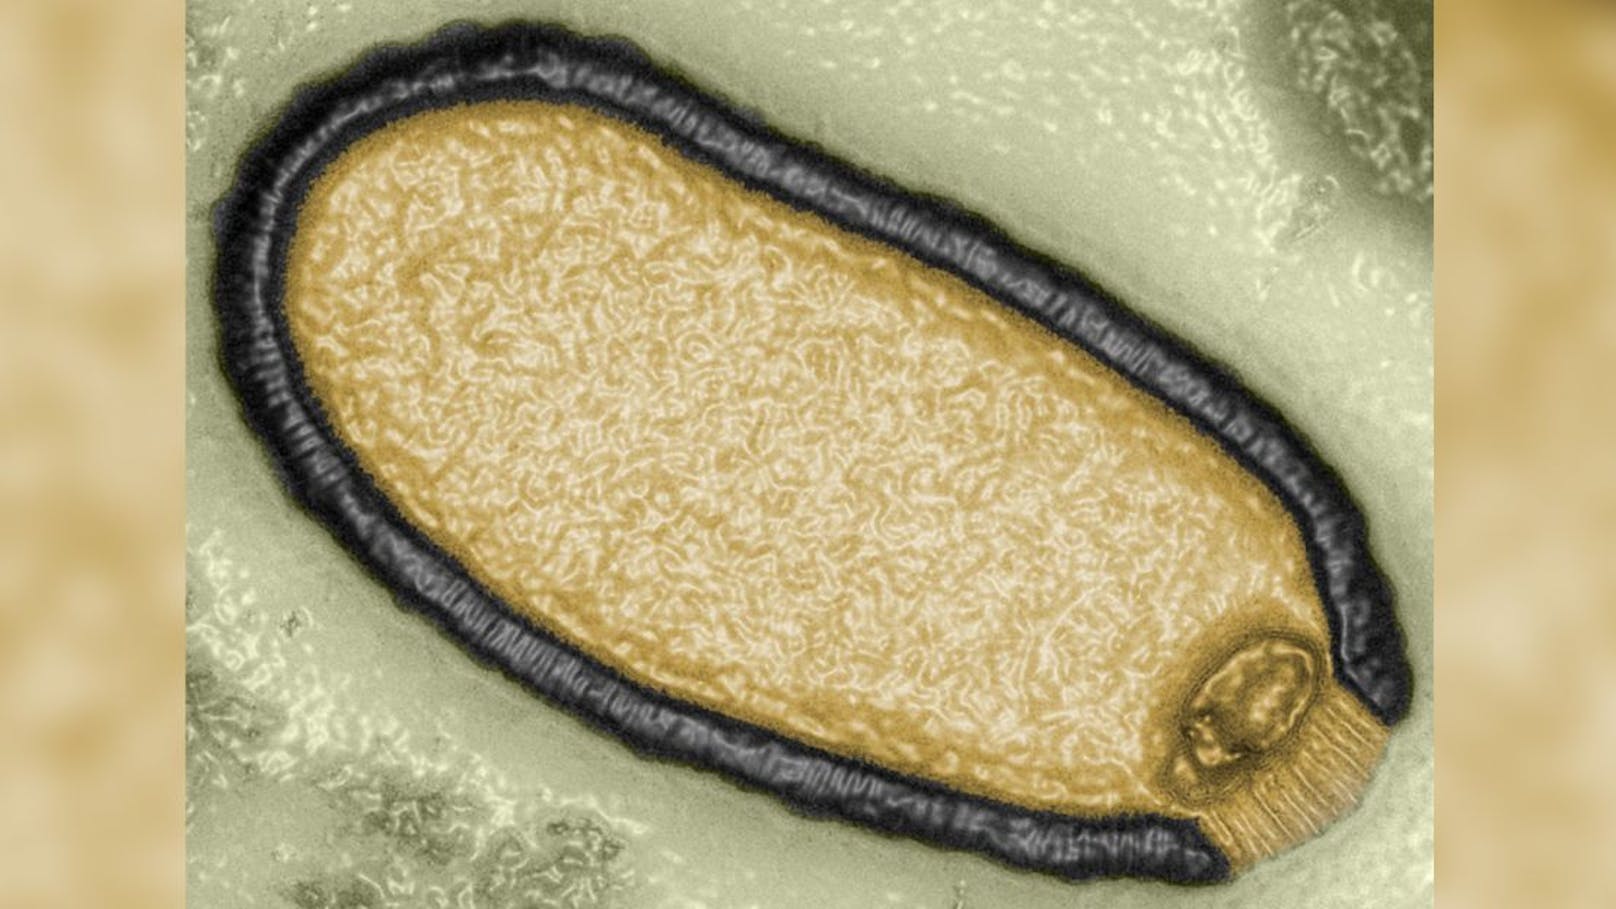 "Zombieviren" – Forscher warnen vor neuer Pandemie